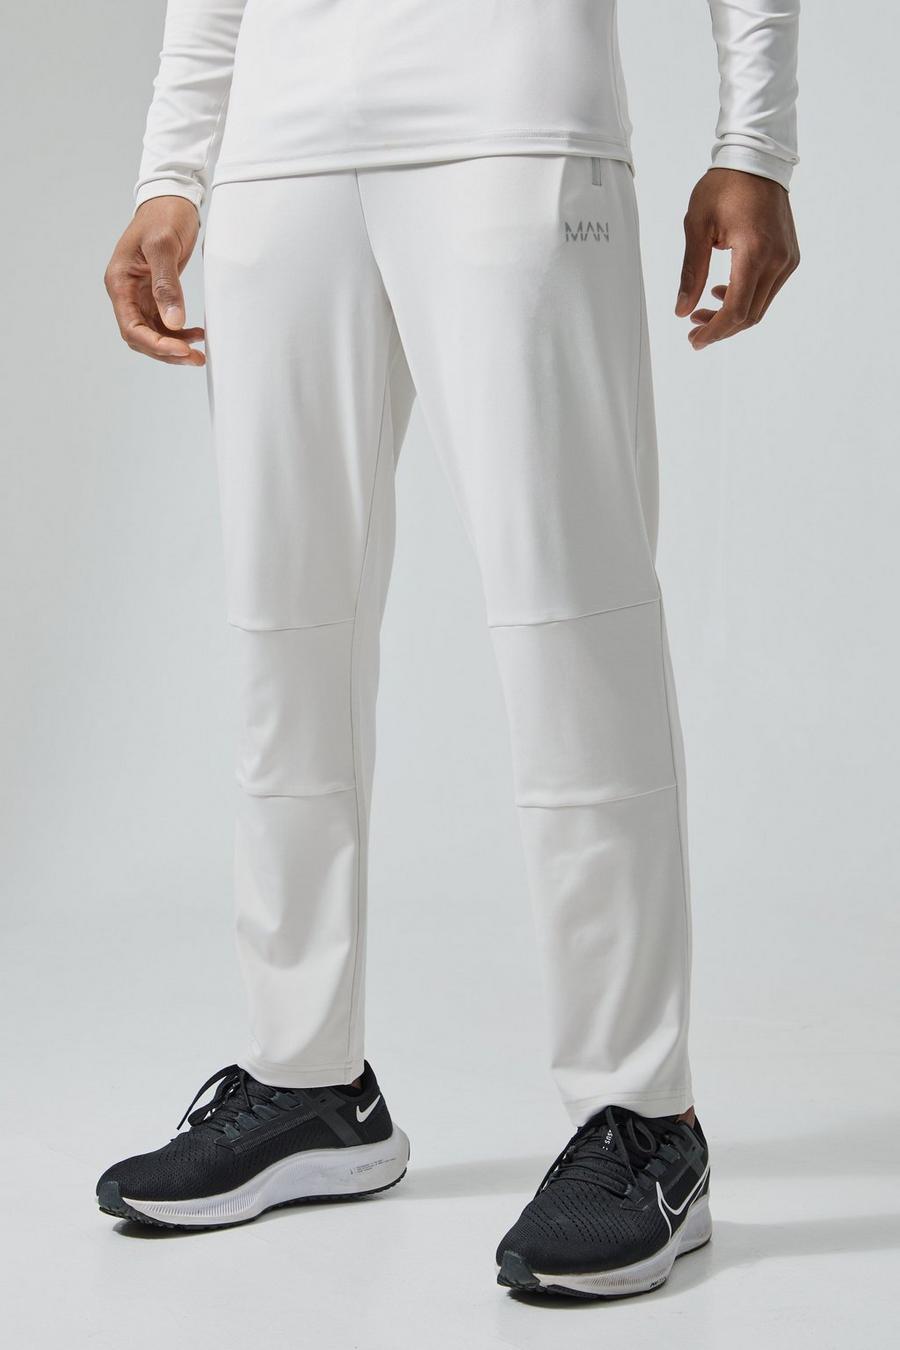 Pantalón deportivo MAN Active elástico, Light grey gris